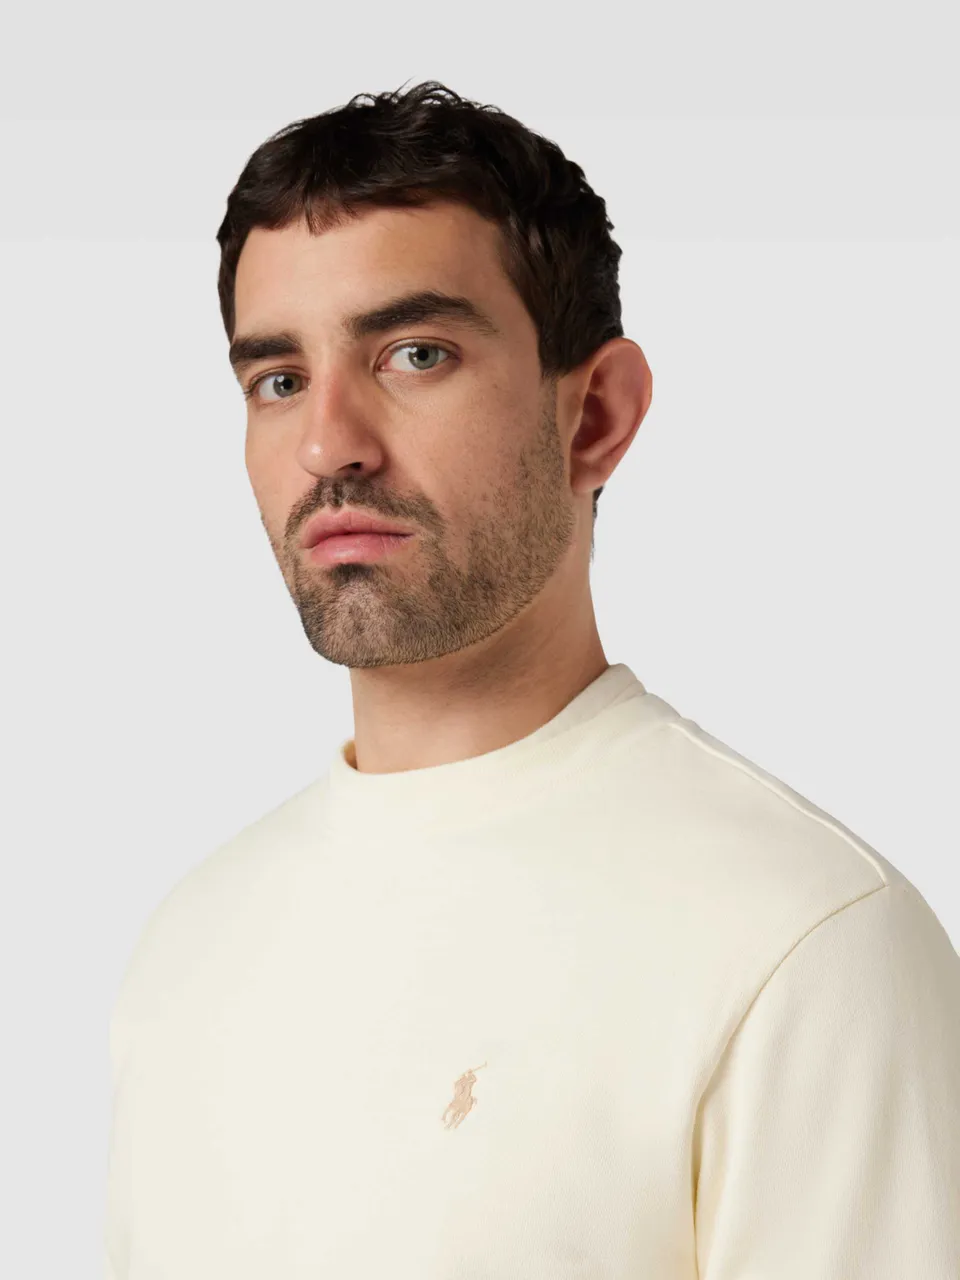 Sweatshirt in unifarbenem Design mit Label-Stitching